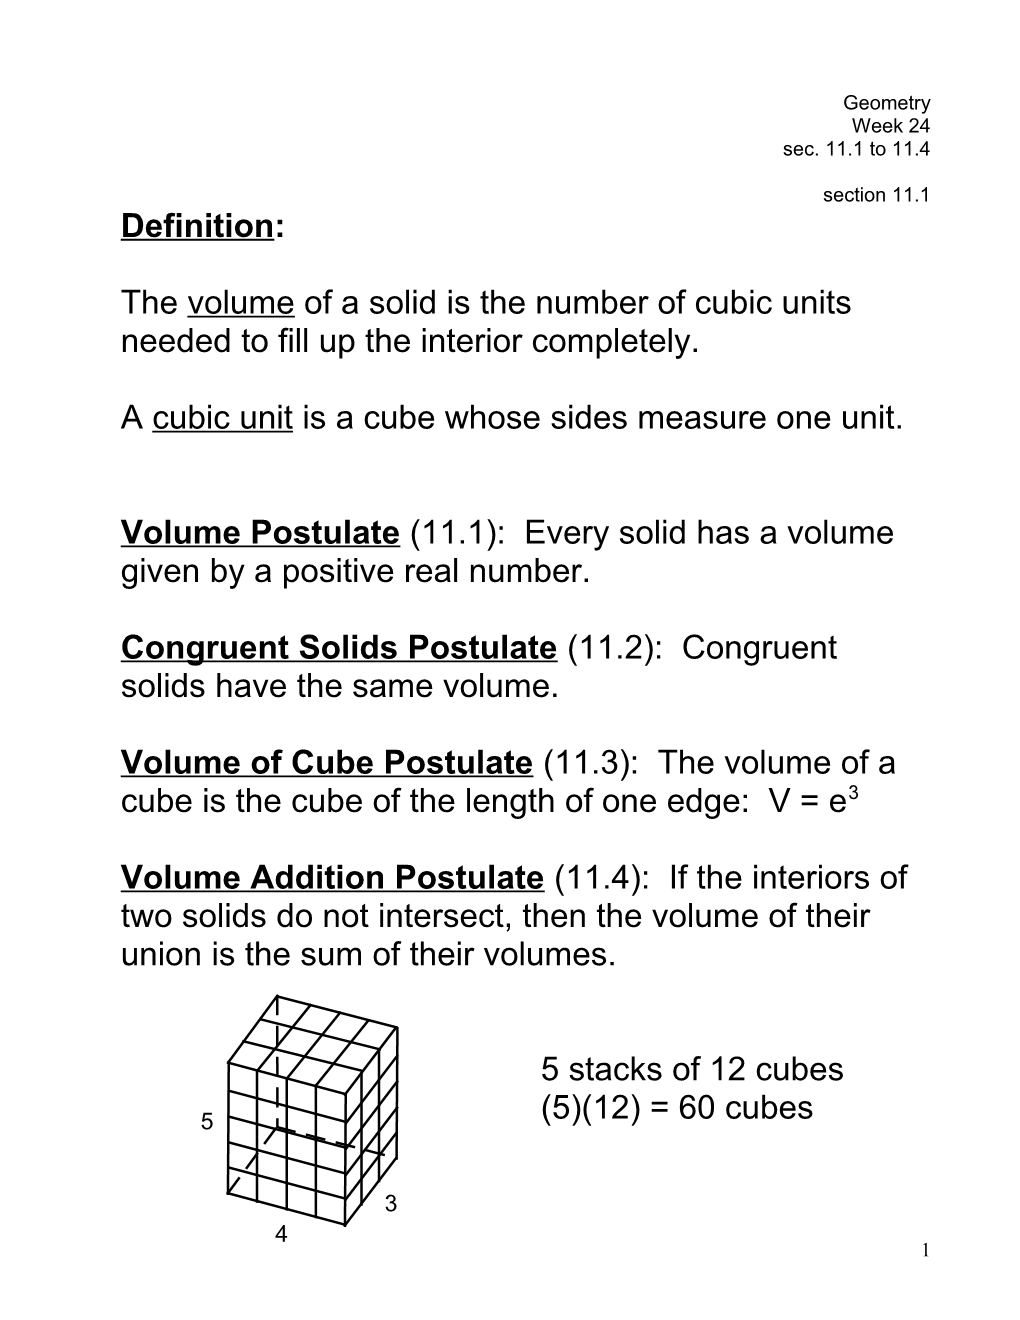 A Cubic Unit Is a Cube Whose Sides Measure One Unit